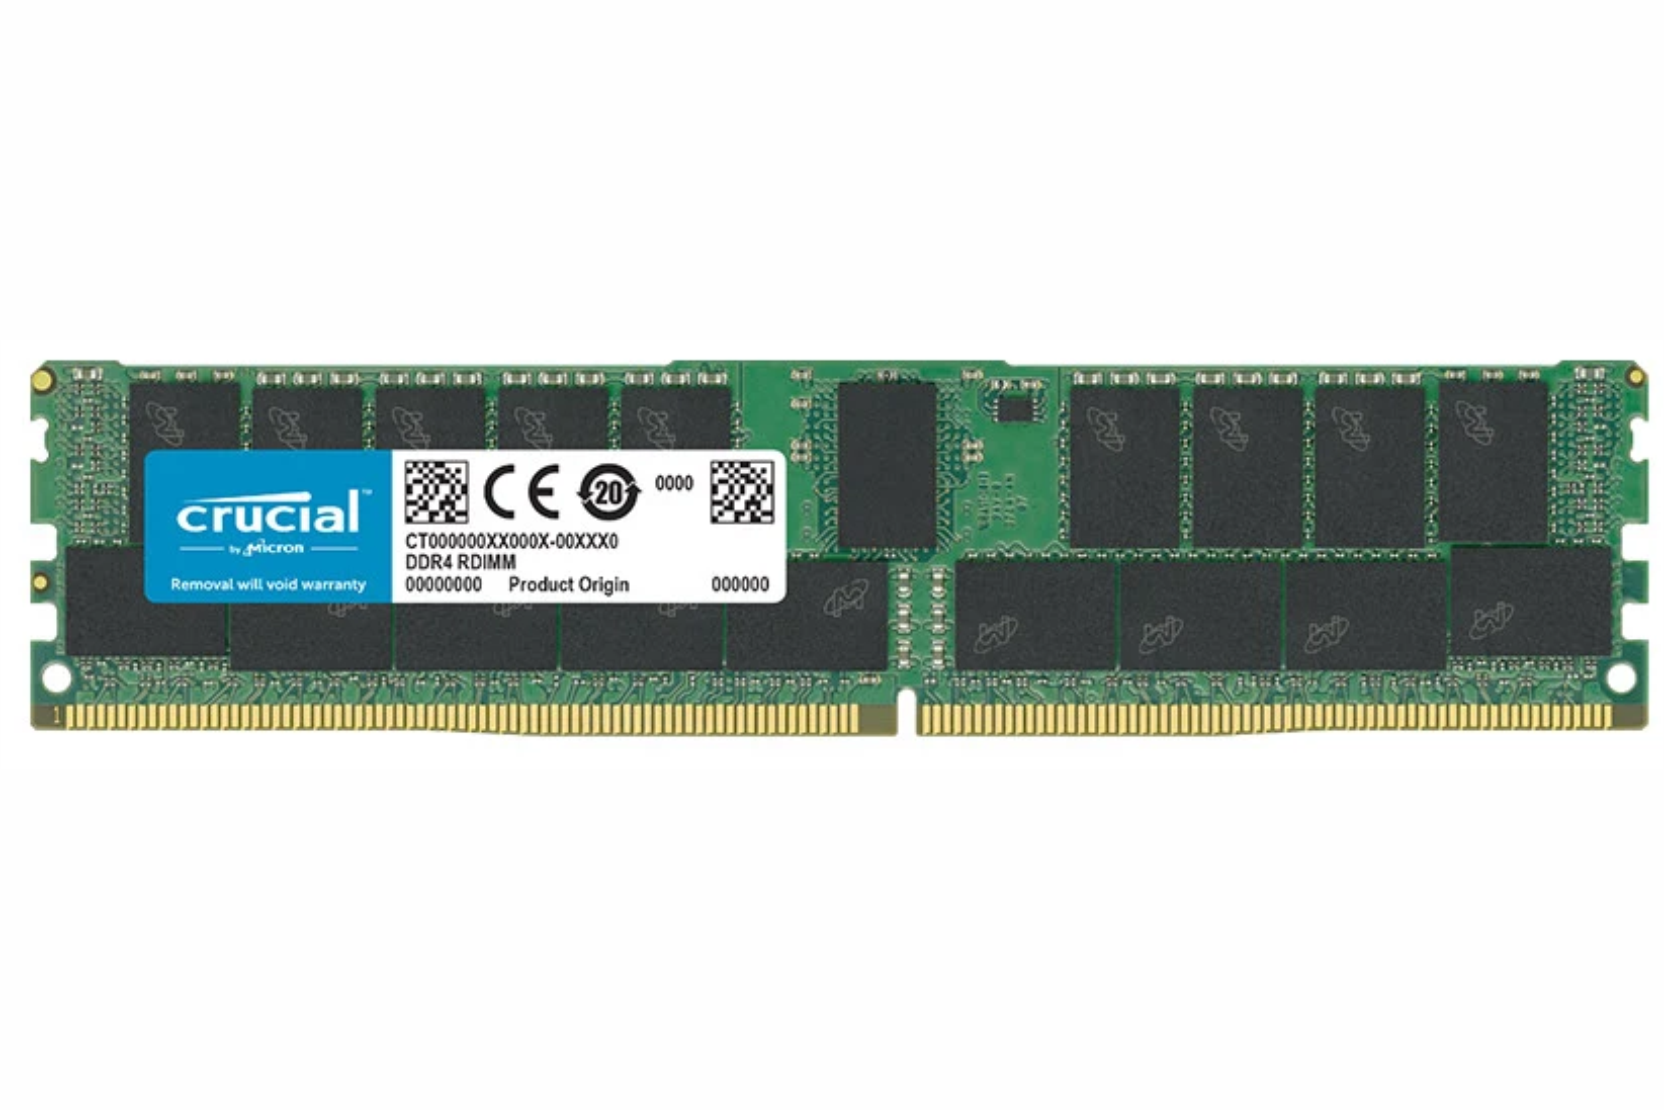 RAM Crucial ECC/REG 32GB DDR4 2666MHz CL19 (CT32G4RFD4266)